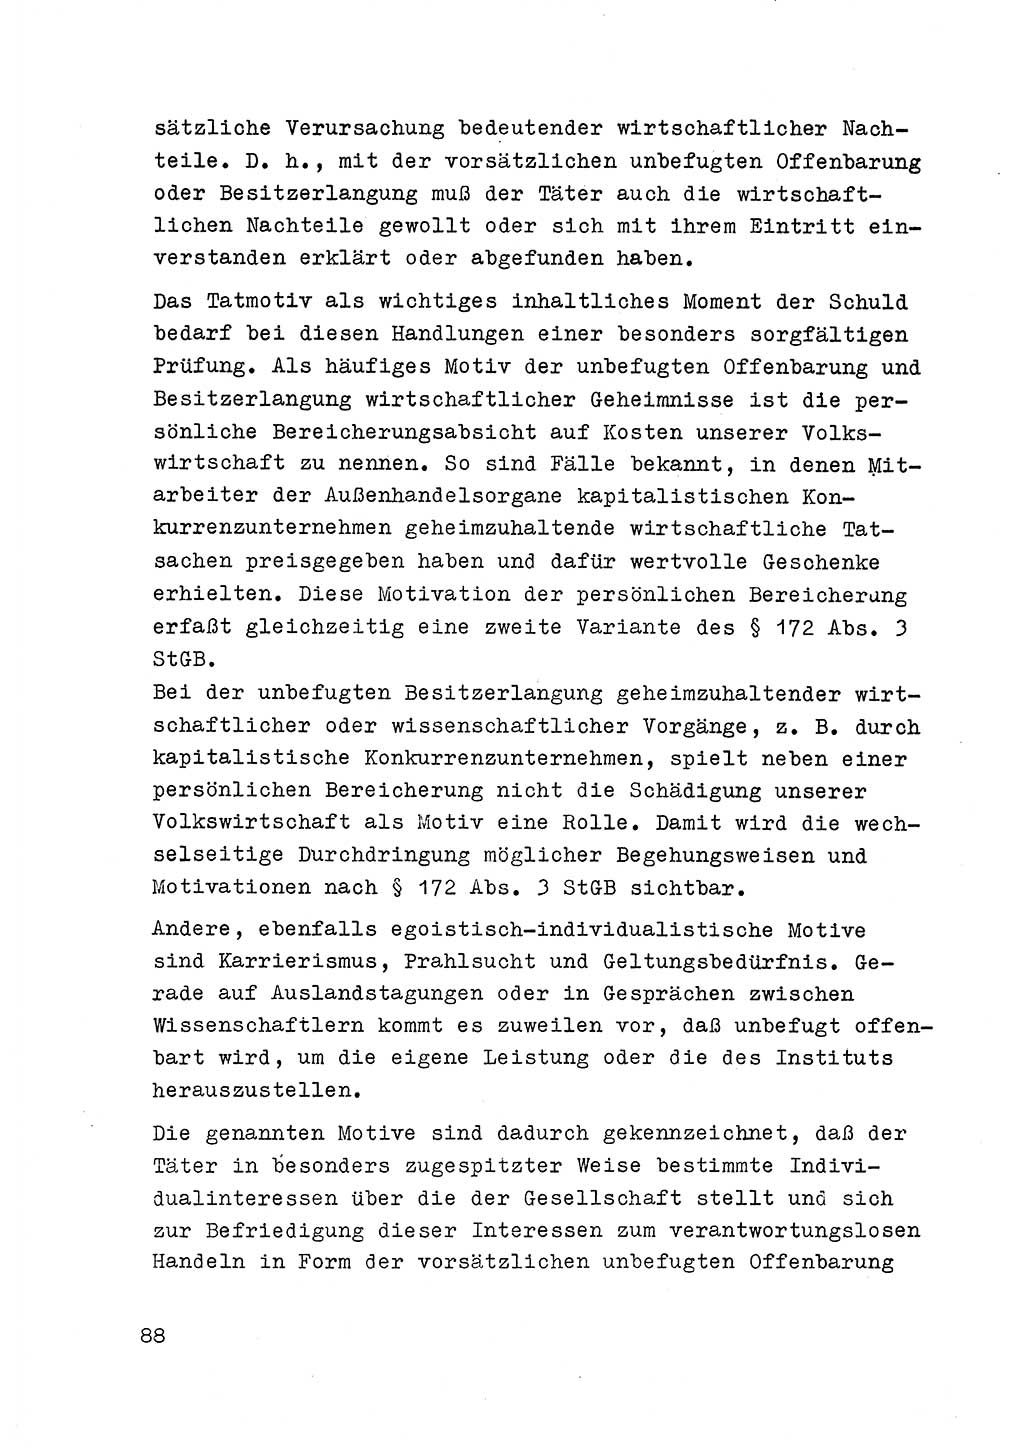 Strafrecht der DDR (Deutsche Demokratische Republik), Besonderer Teil, Lehrmaterial, Heft 6 1970, Seite 88 (Strafr. DDR BT Lehrmat. H. 6 1970, S. 88)